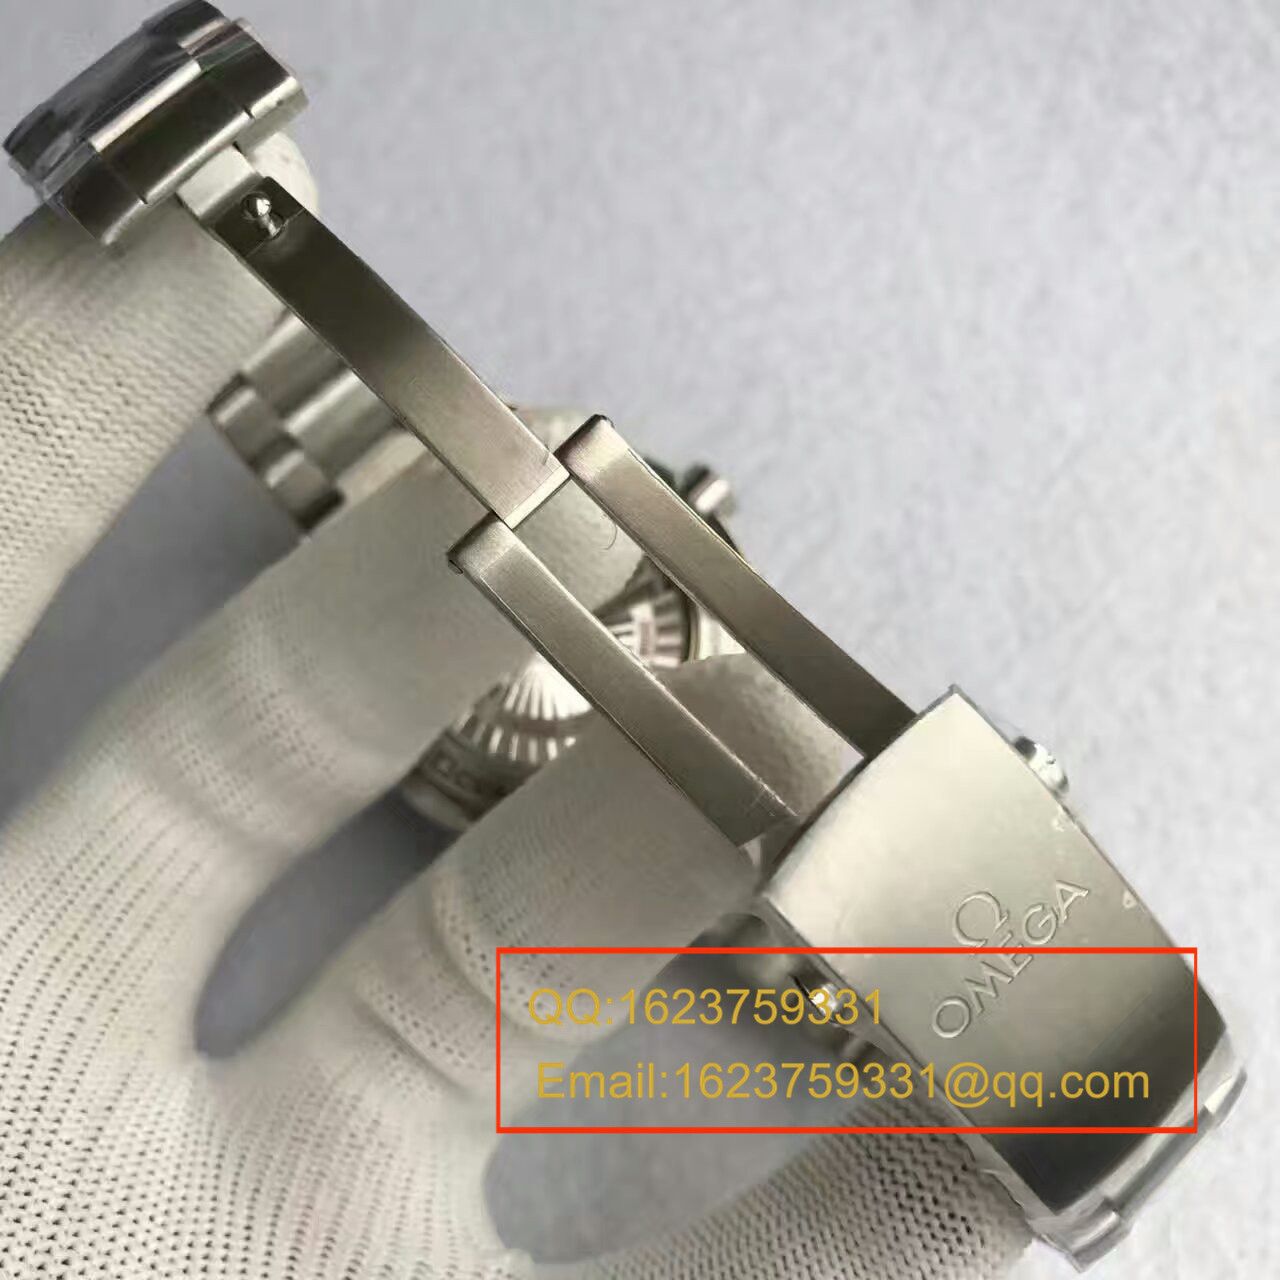 【KW厂一比一超A高仿】欧米茄海马系列231.12.42.21.01.002 男士机械手表 《钢带款》 / M137